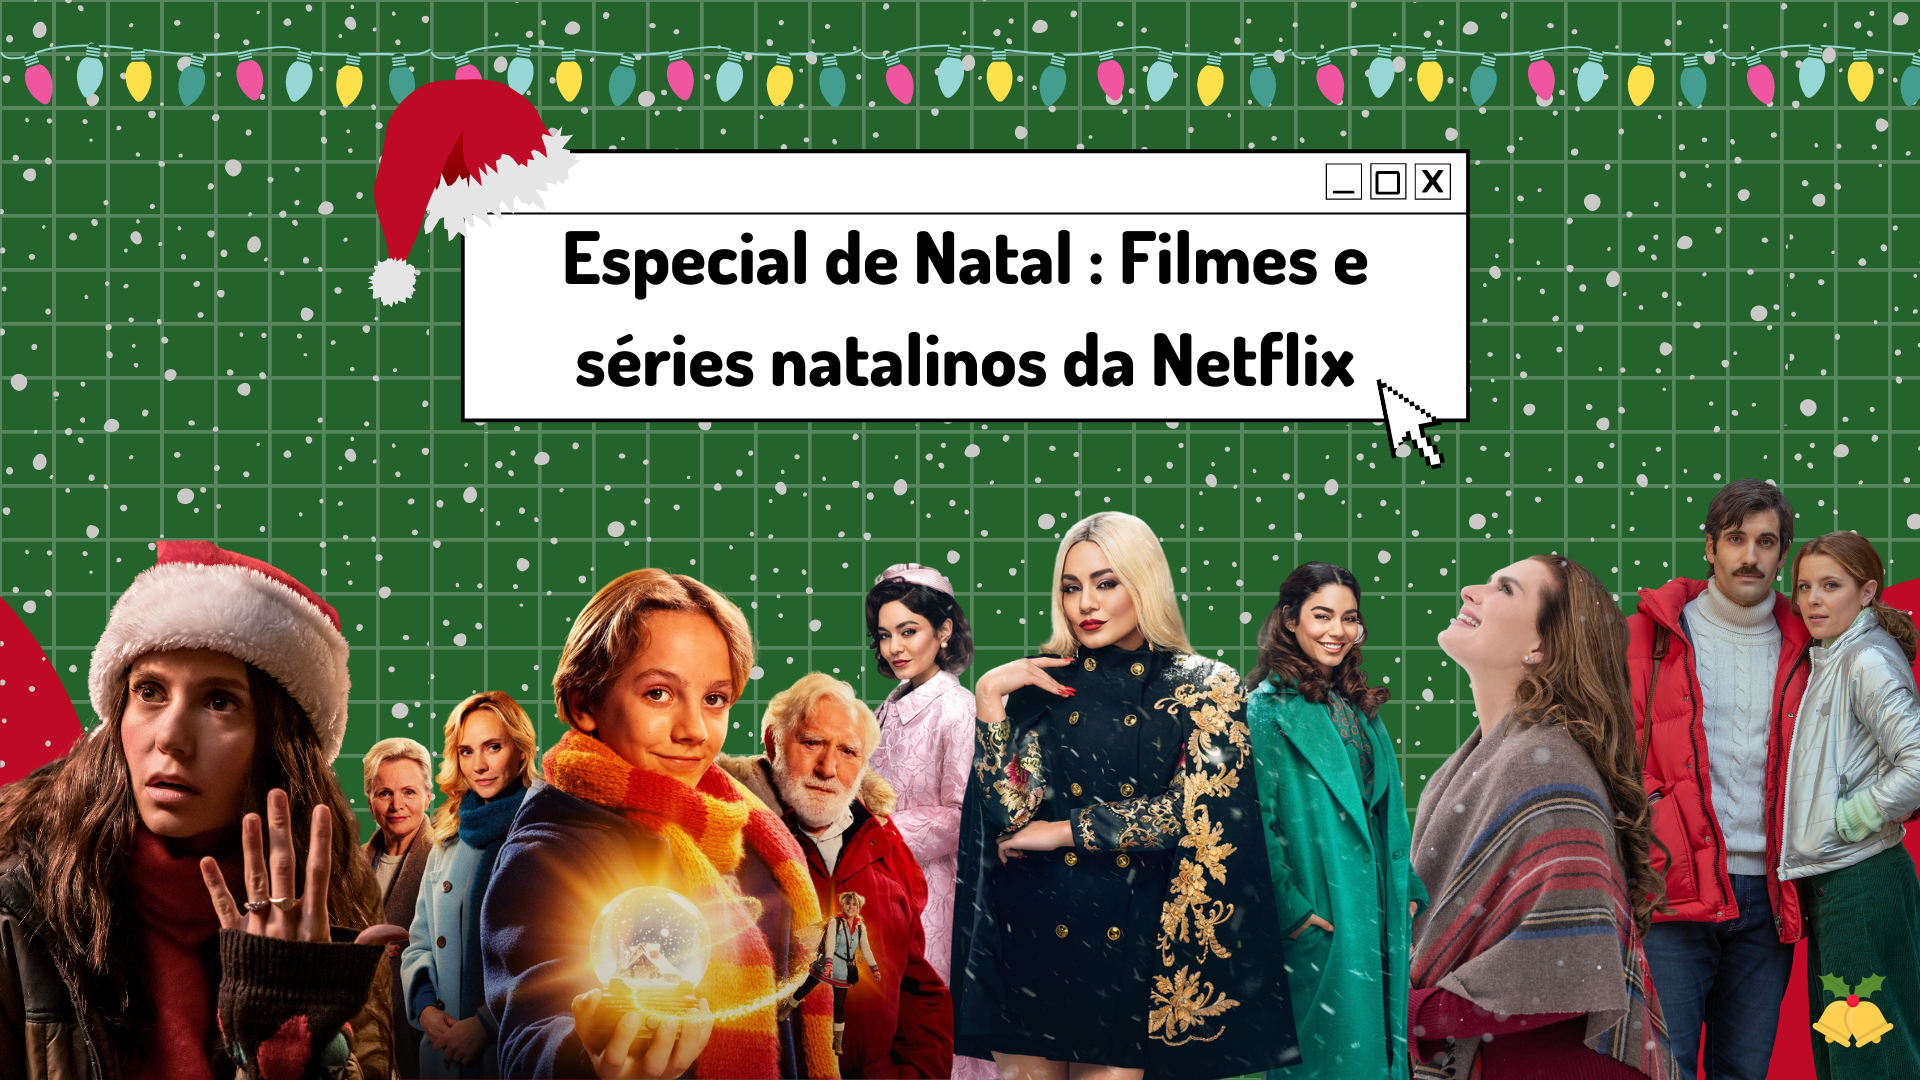 Especial de Natal: filmes e séries natalinos da Netflix - Entretetizei